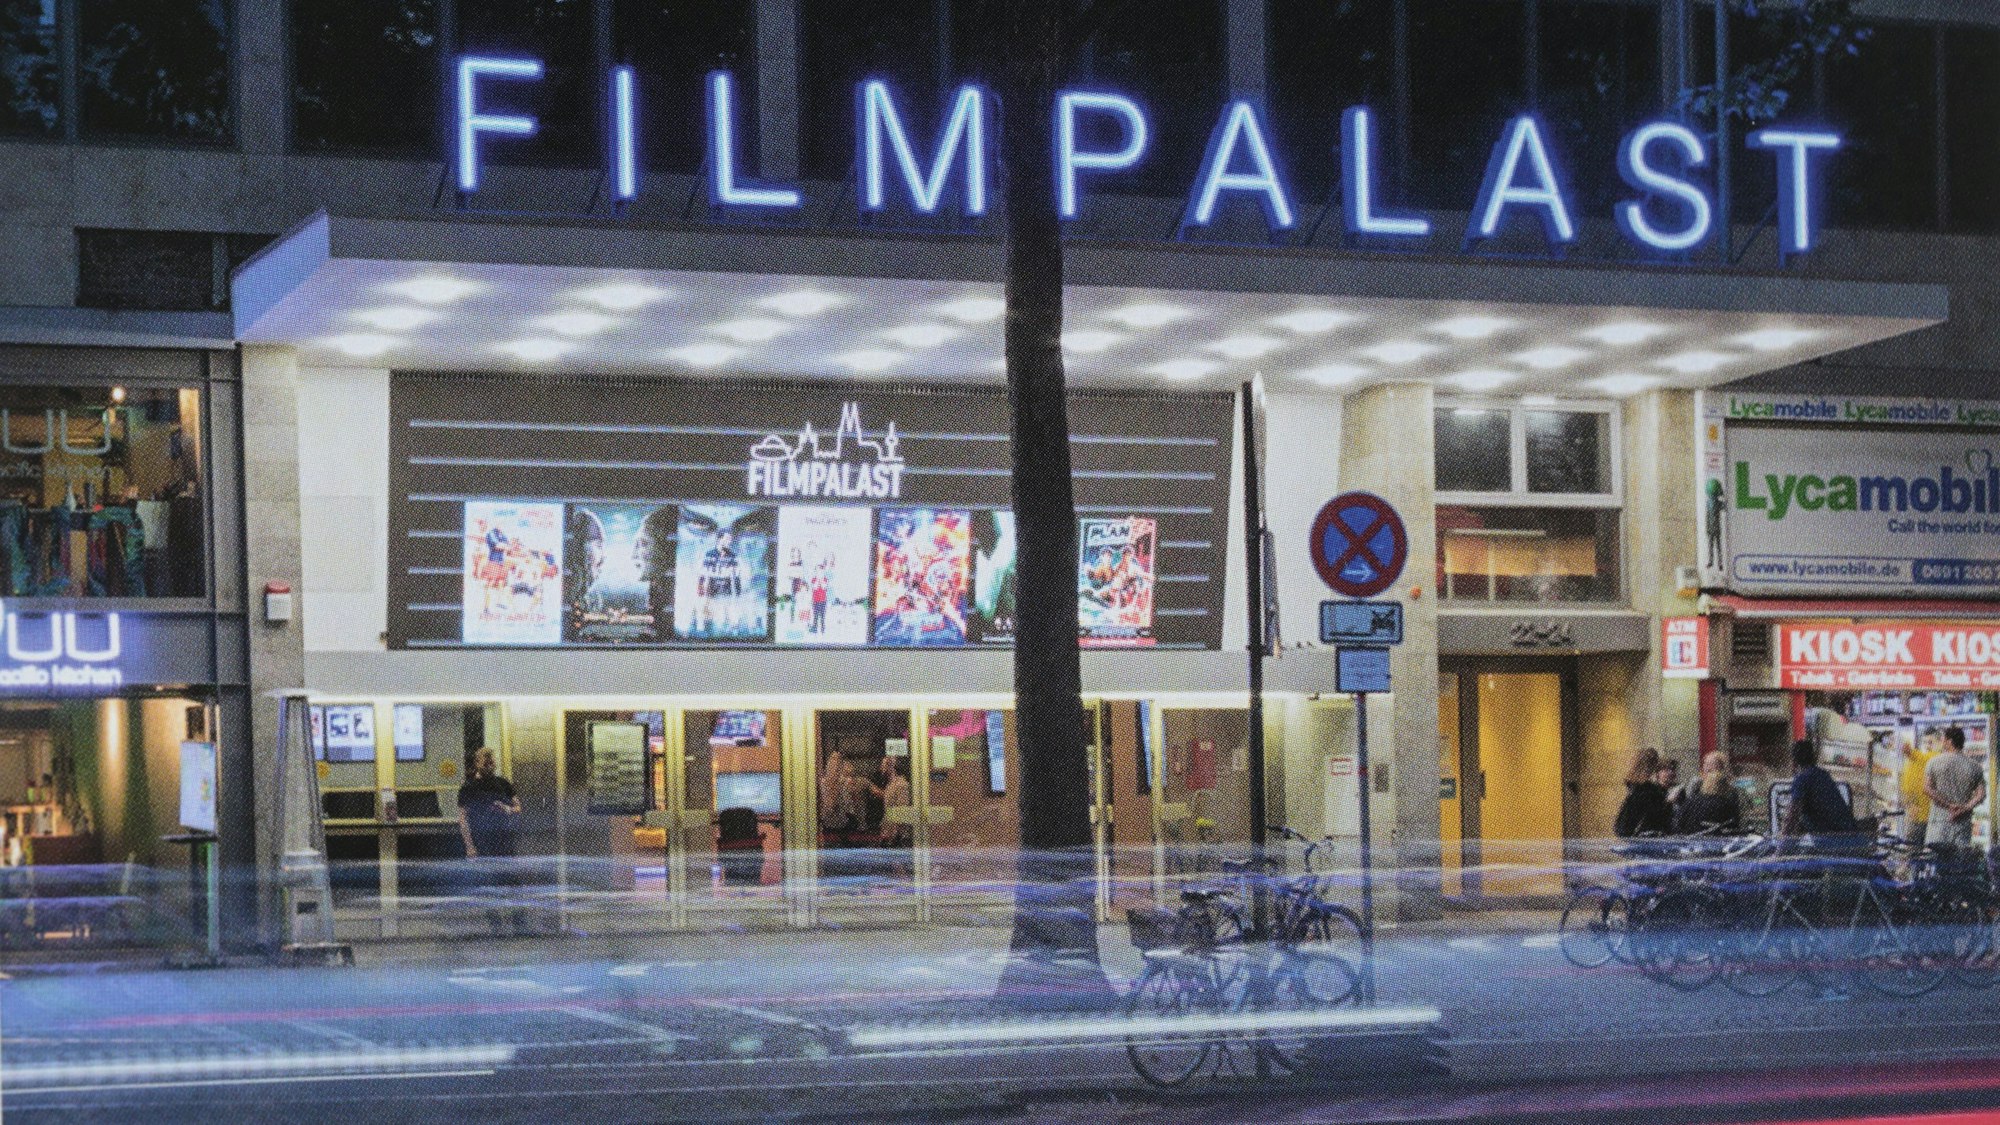 Der Filmpalast in Köln im Dunkeln von außen.